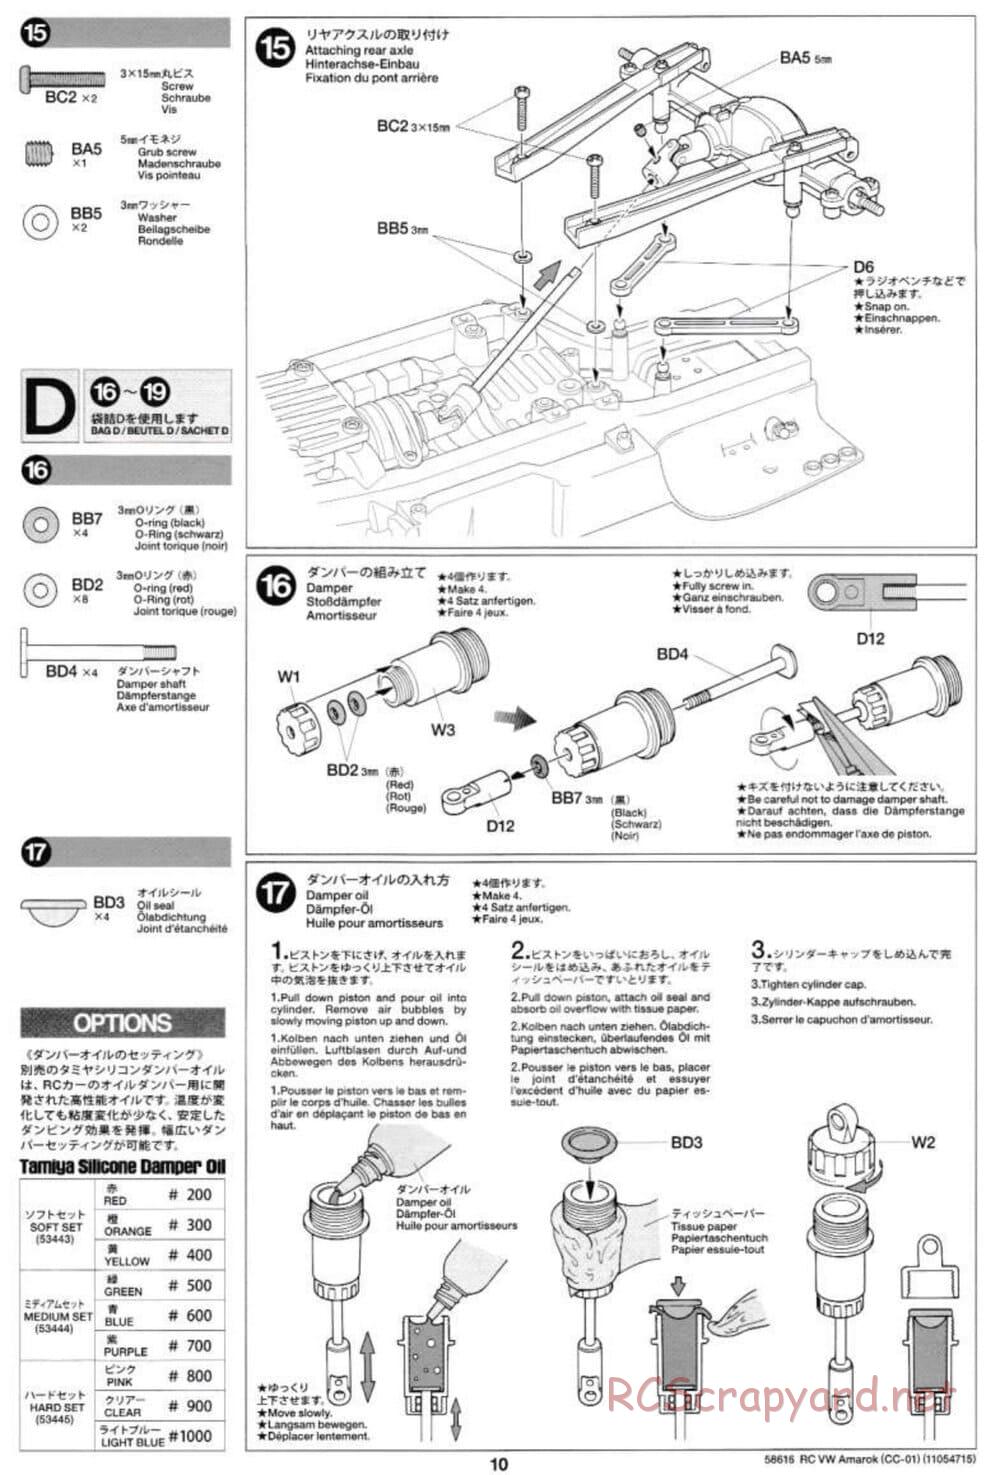 Tamiya - Volkswagen Amarok - CC-01 Chassis - Manual - Page 10